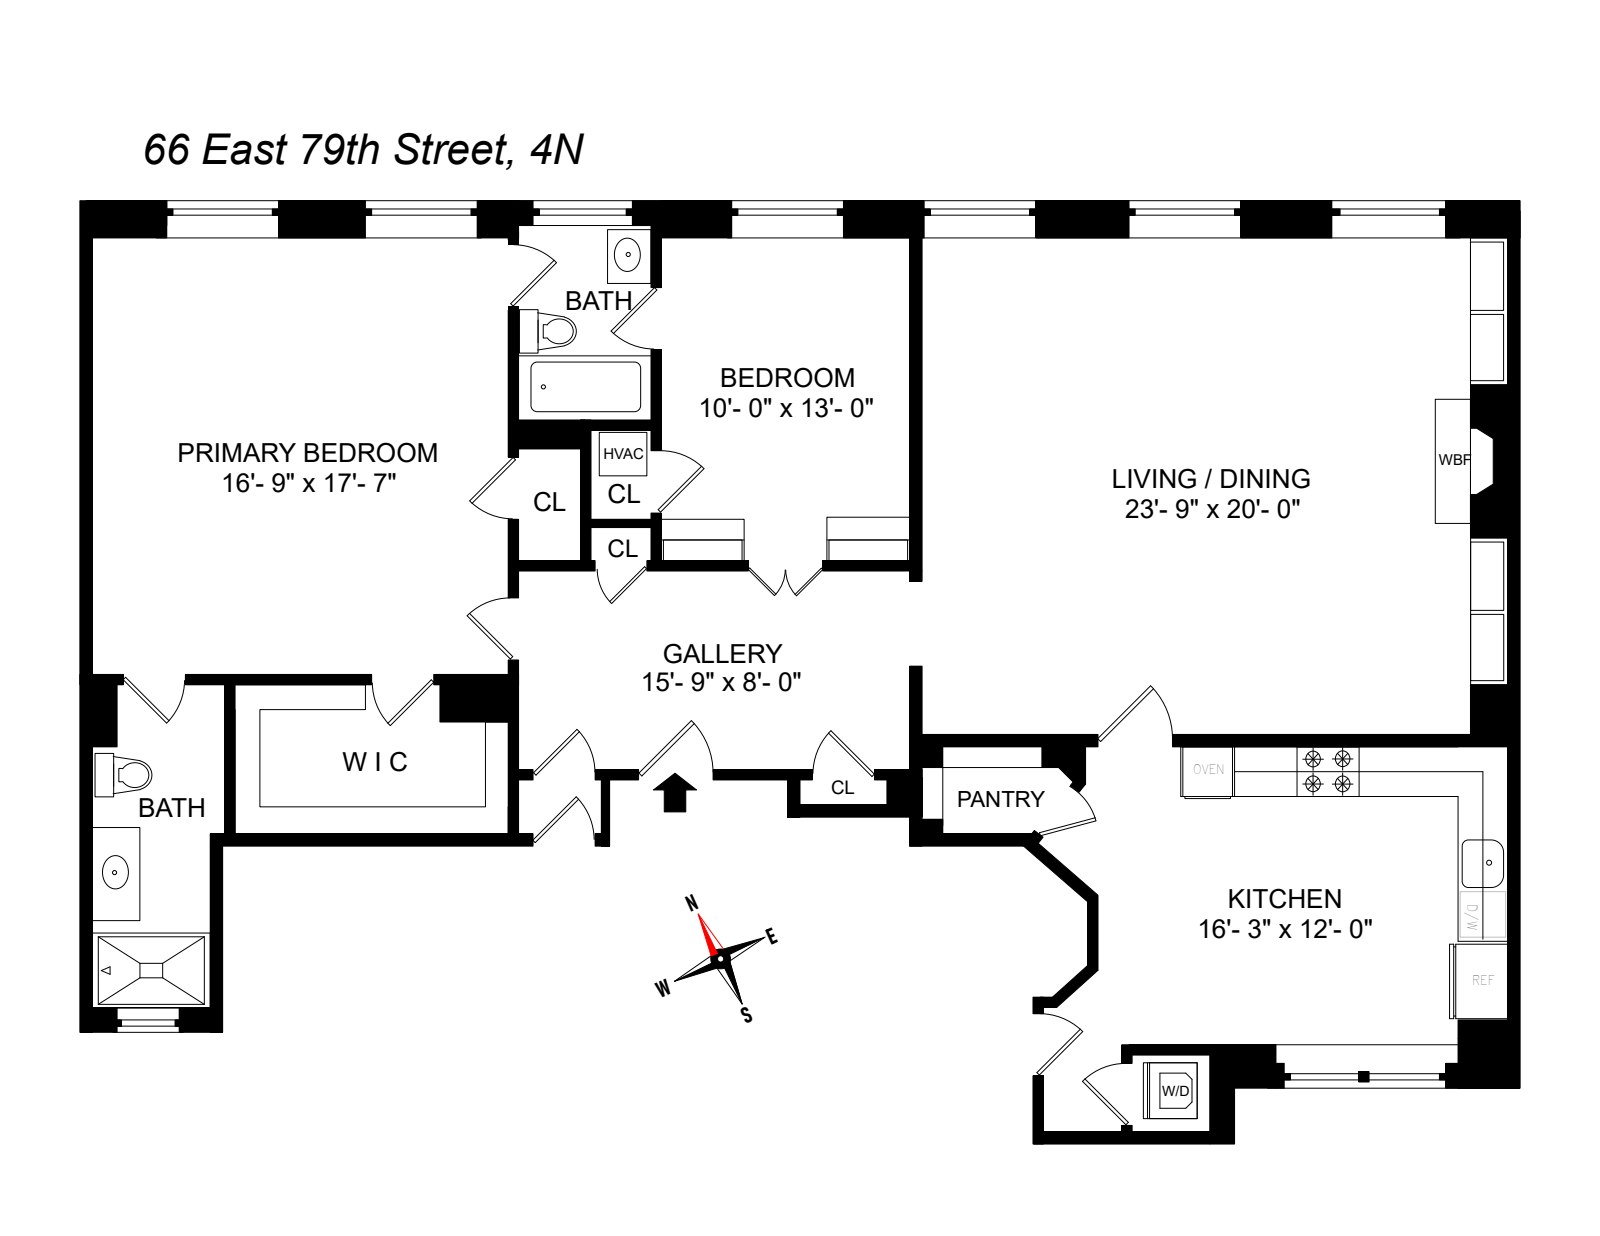 Floorplan for 66 East 79th Street, 4N